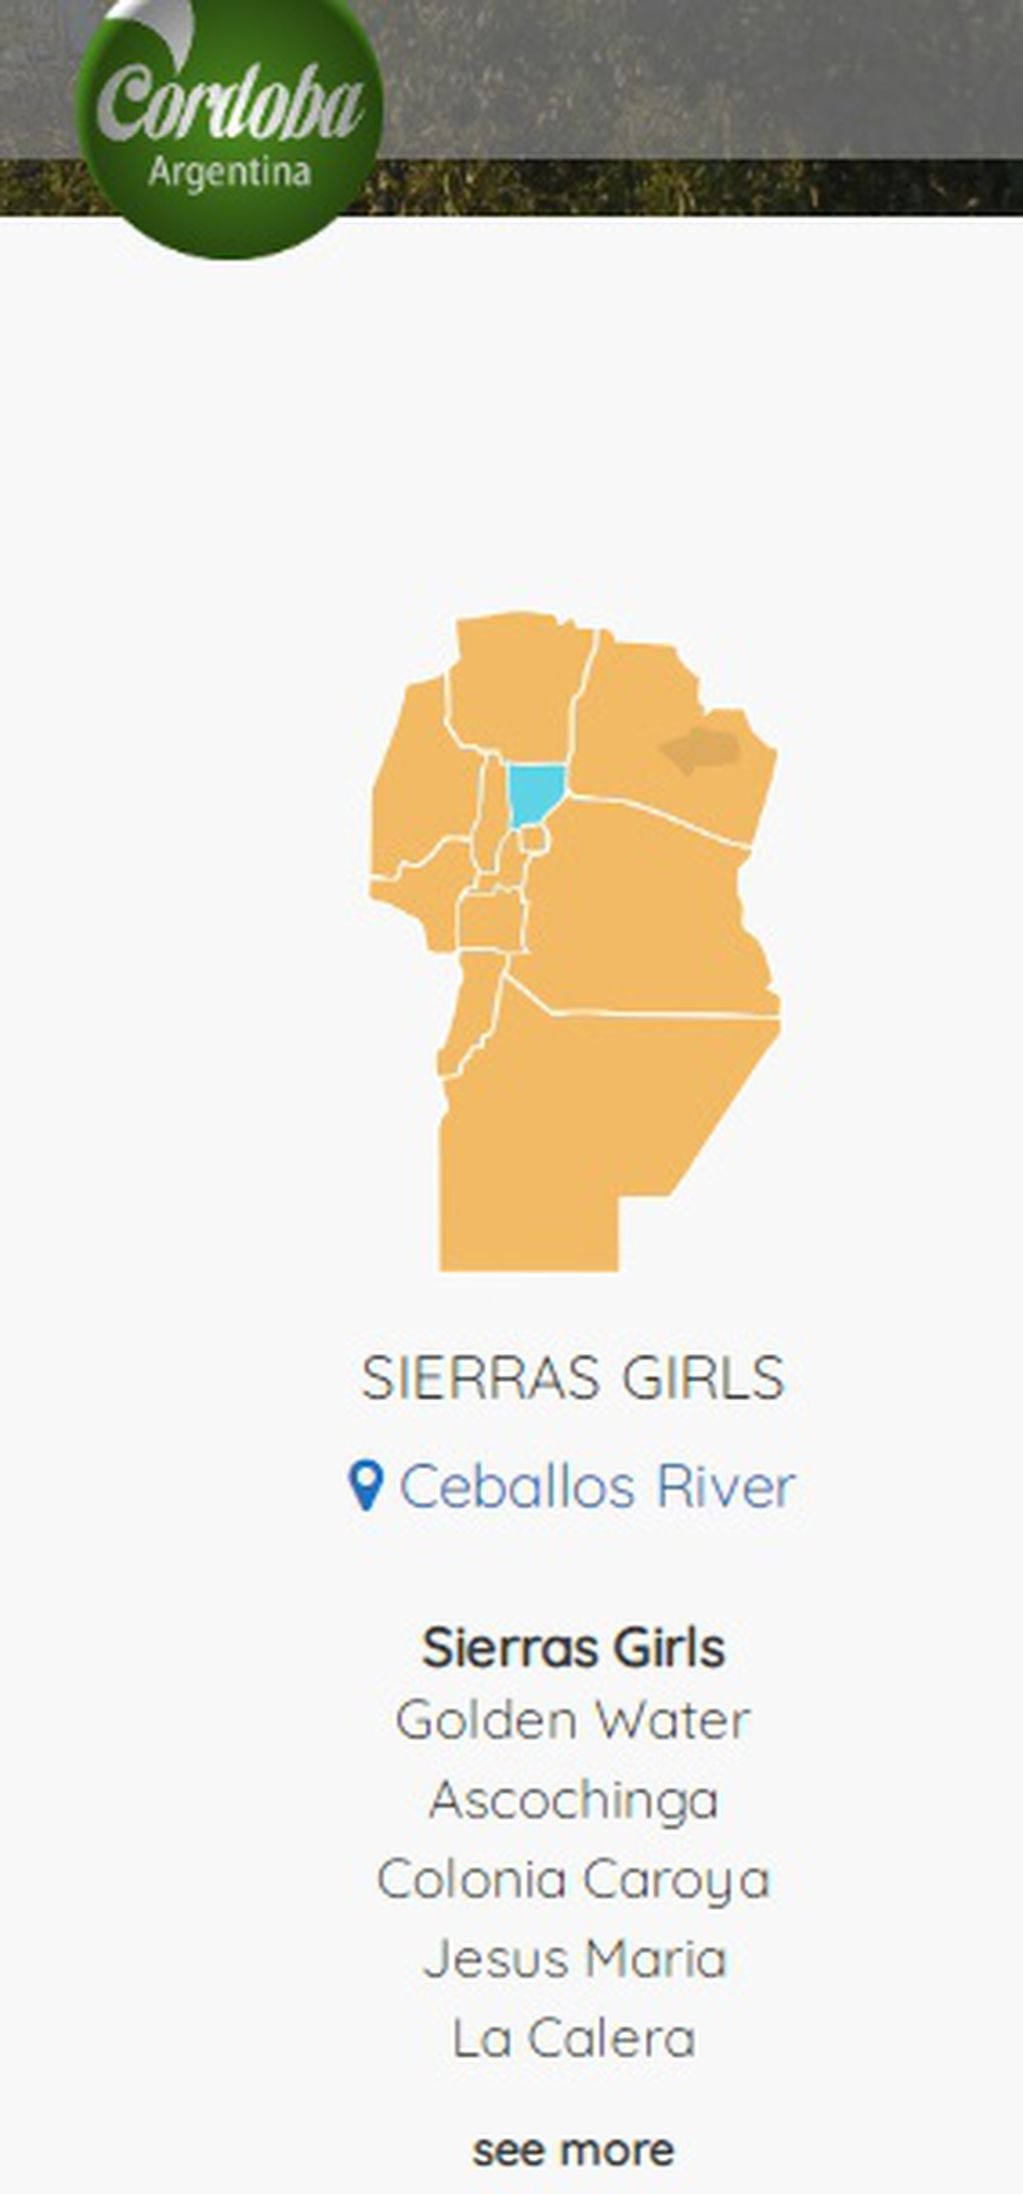 "Ceballos River" en "Sierras Girls".